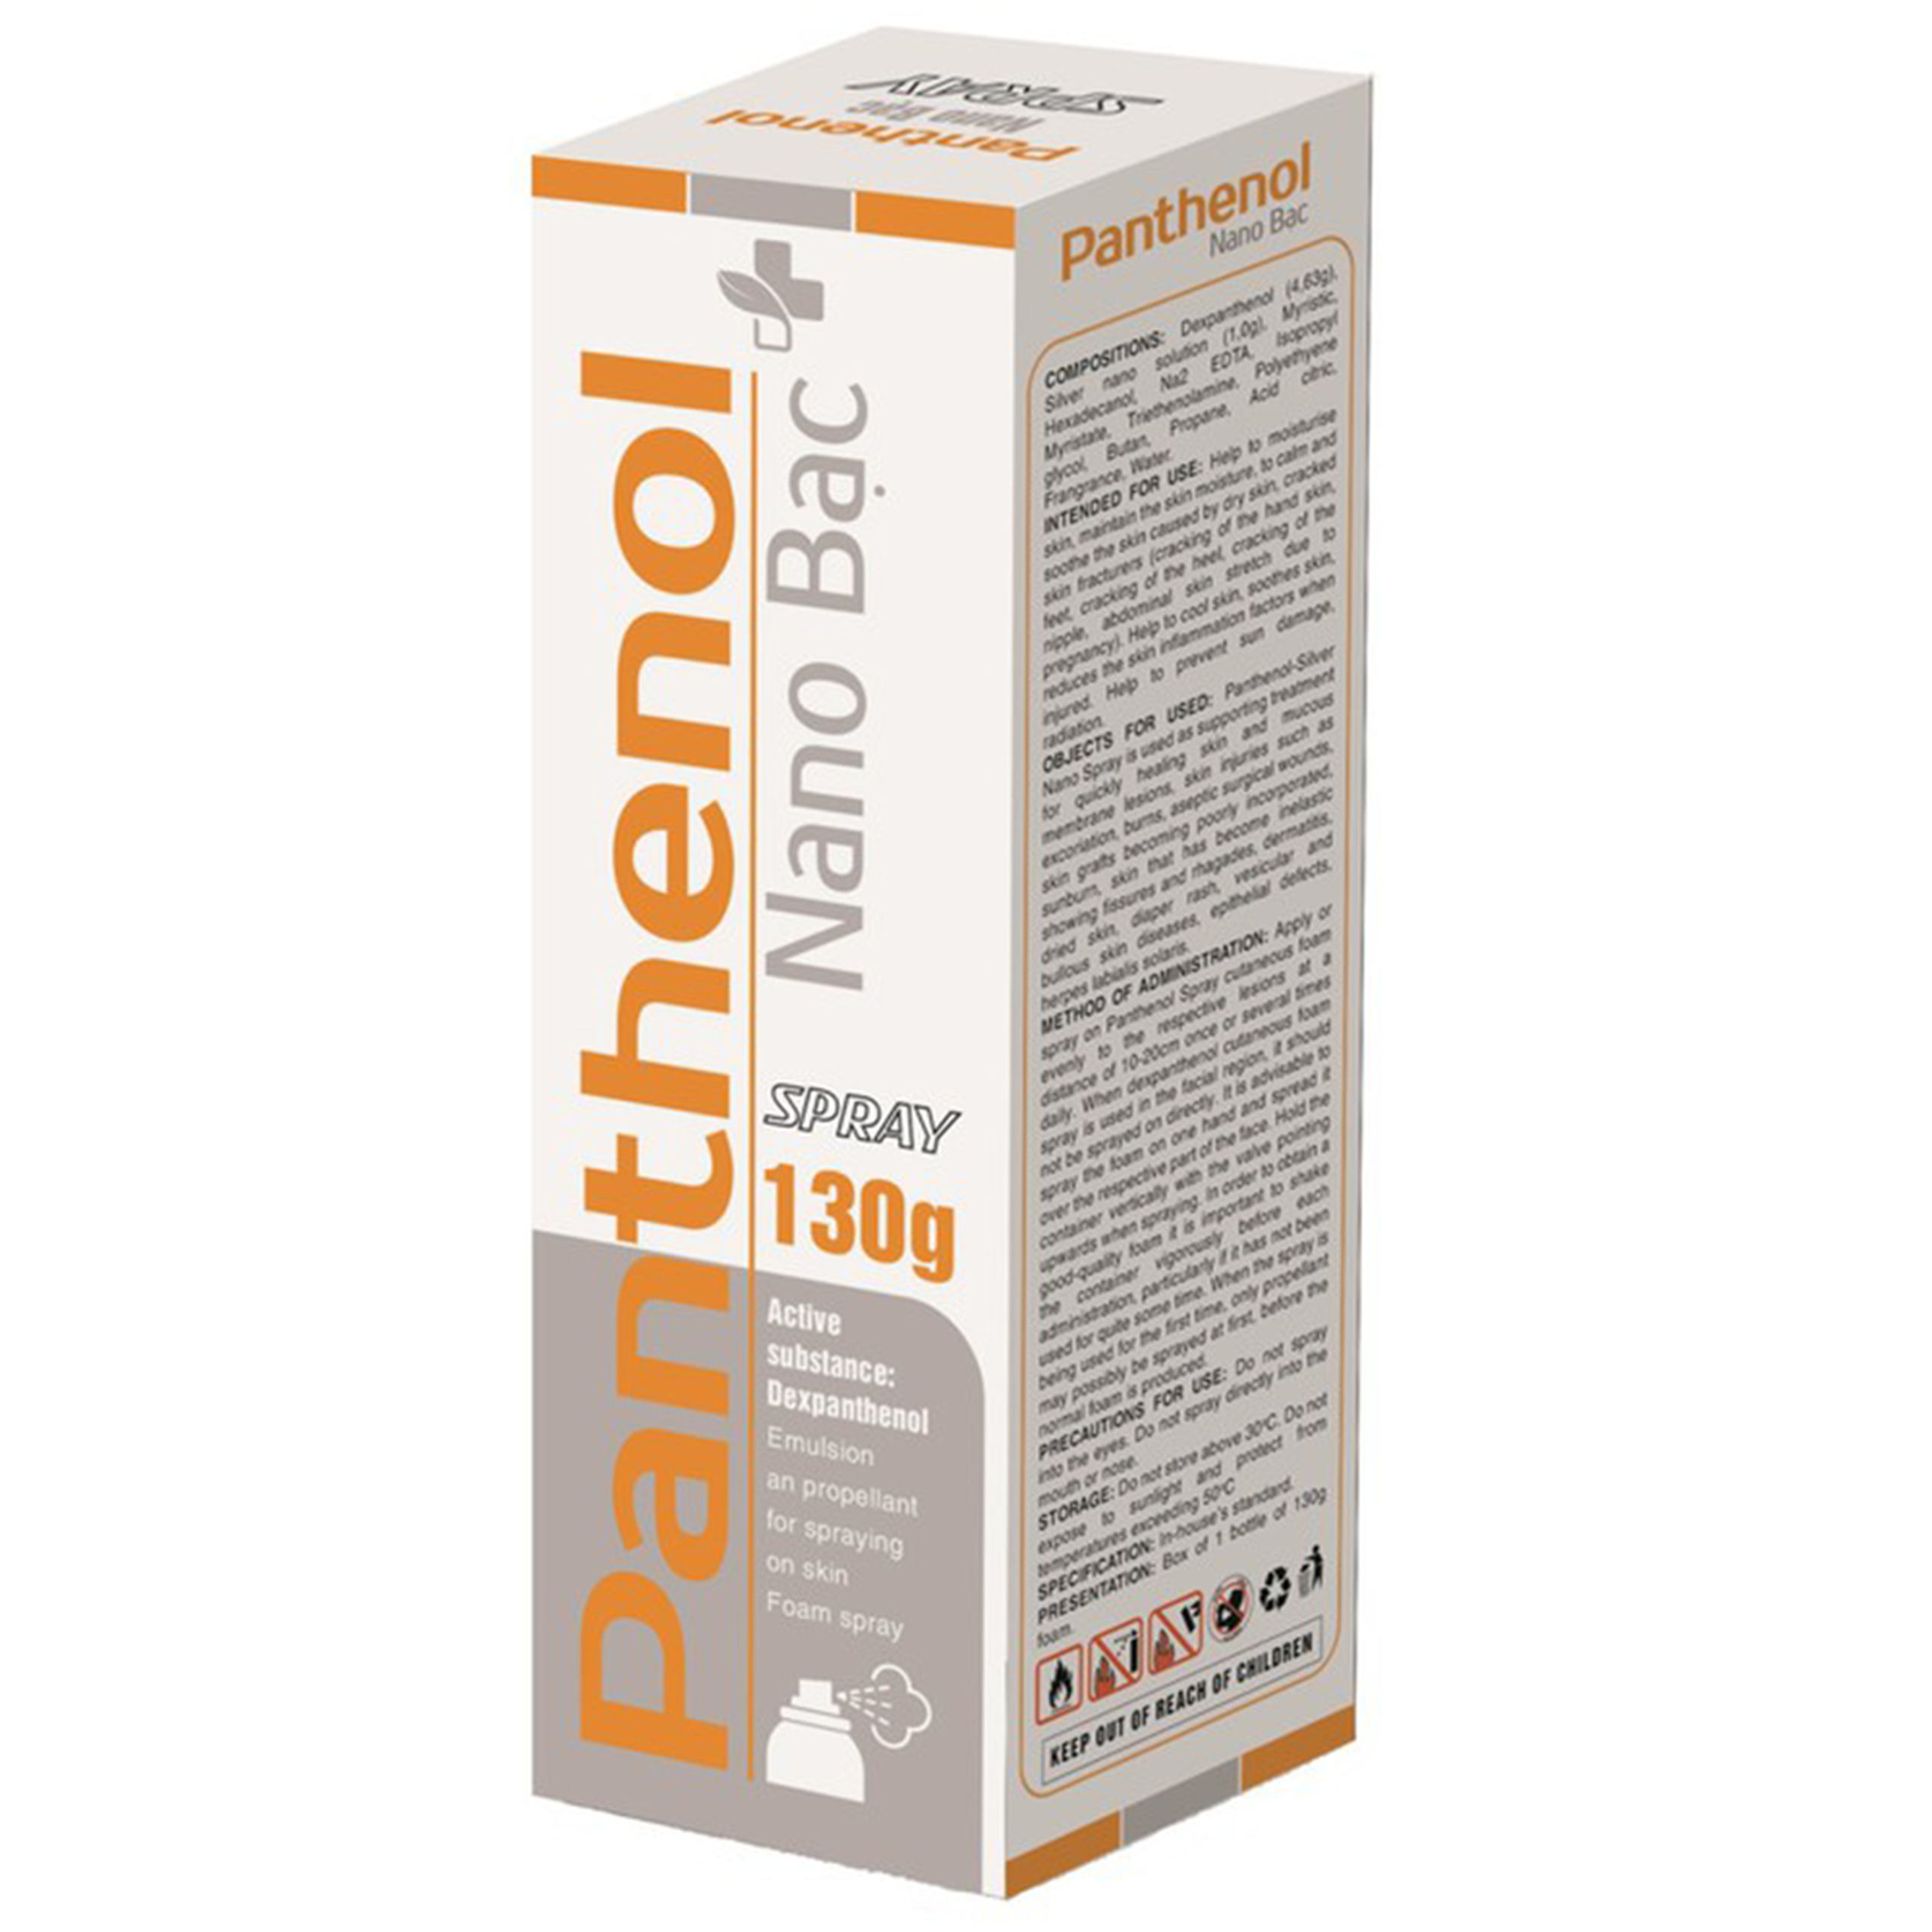 Xịt Panthenol Nano Bạc Spray Bimex dưỡng da, duy trì độ ẩm cho da (130g)